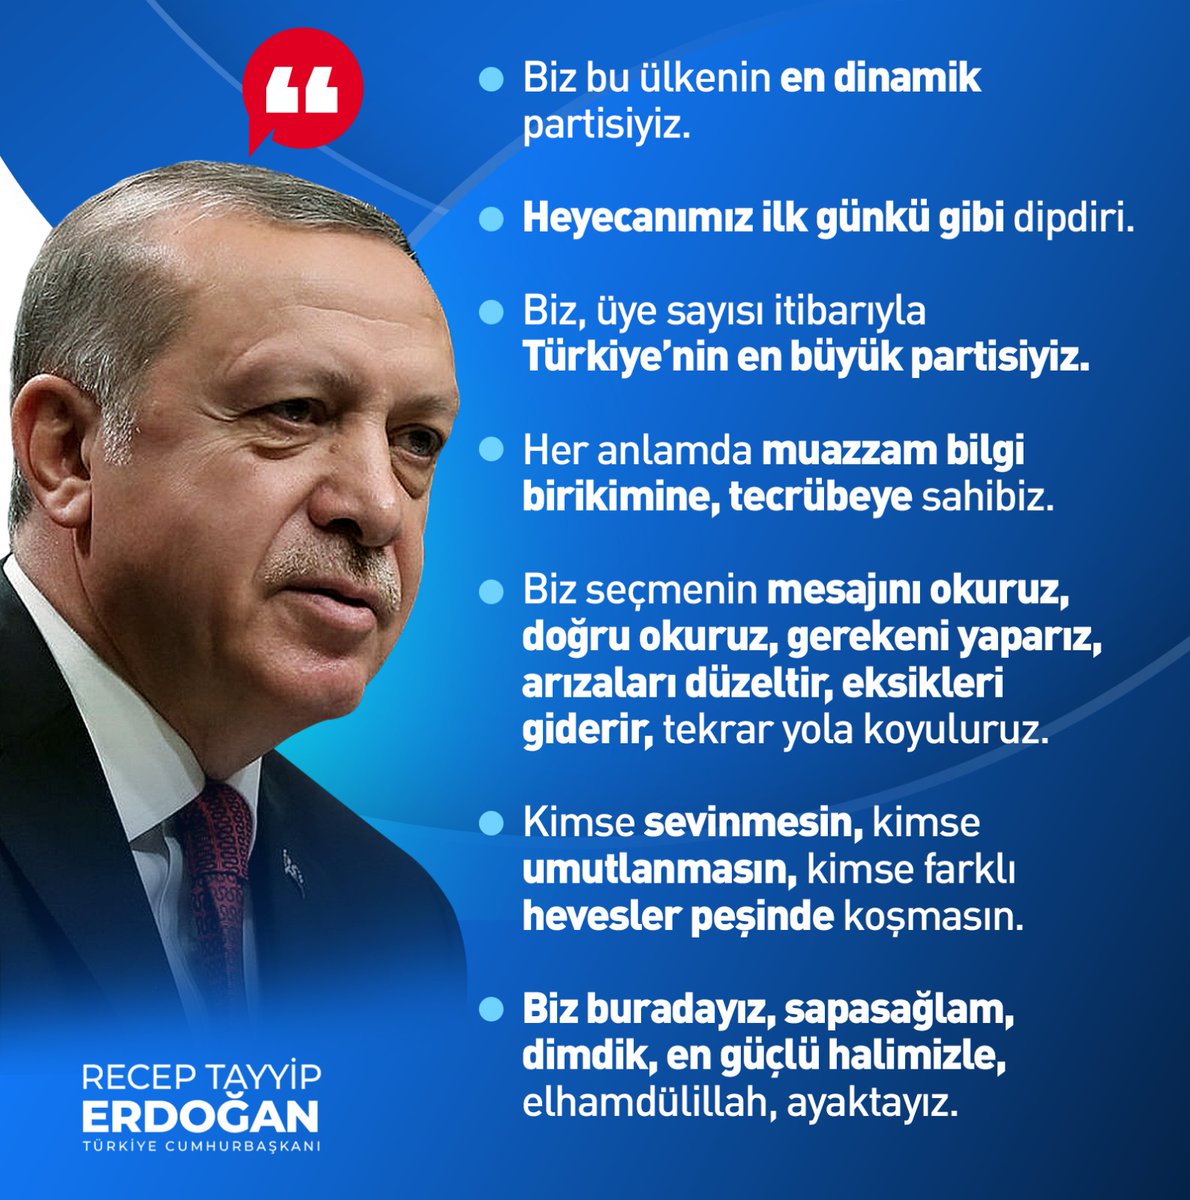 Cumhurbaşkanımız Recep Tayyip Erdoğan: 'Biz bu ülkenin en dinamik partisiyiz. Biz seçmenin mesajını okuruz, gerekeni yaparız, arızaları düzeltir, eksikleri giderir, tekrar yola koyuluruz. Biz buradayız, sapasağlam, dimdik, en güçlü halimizle, elhamdülillah, ayaktayız.'